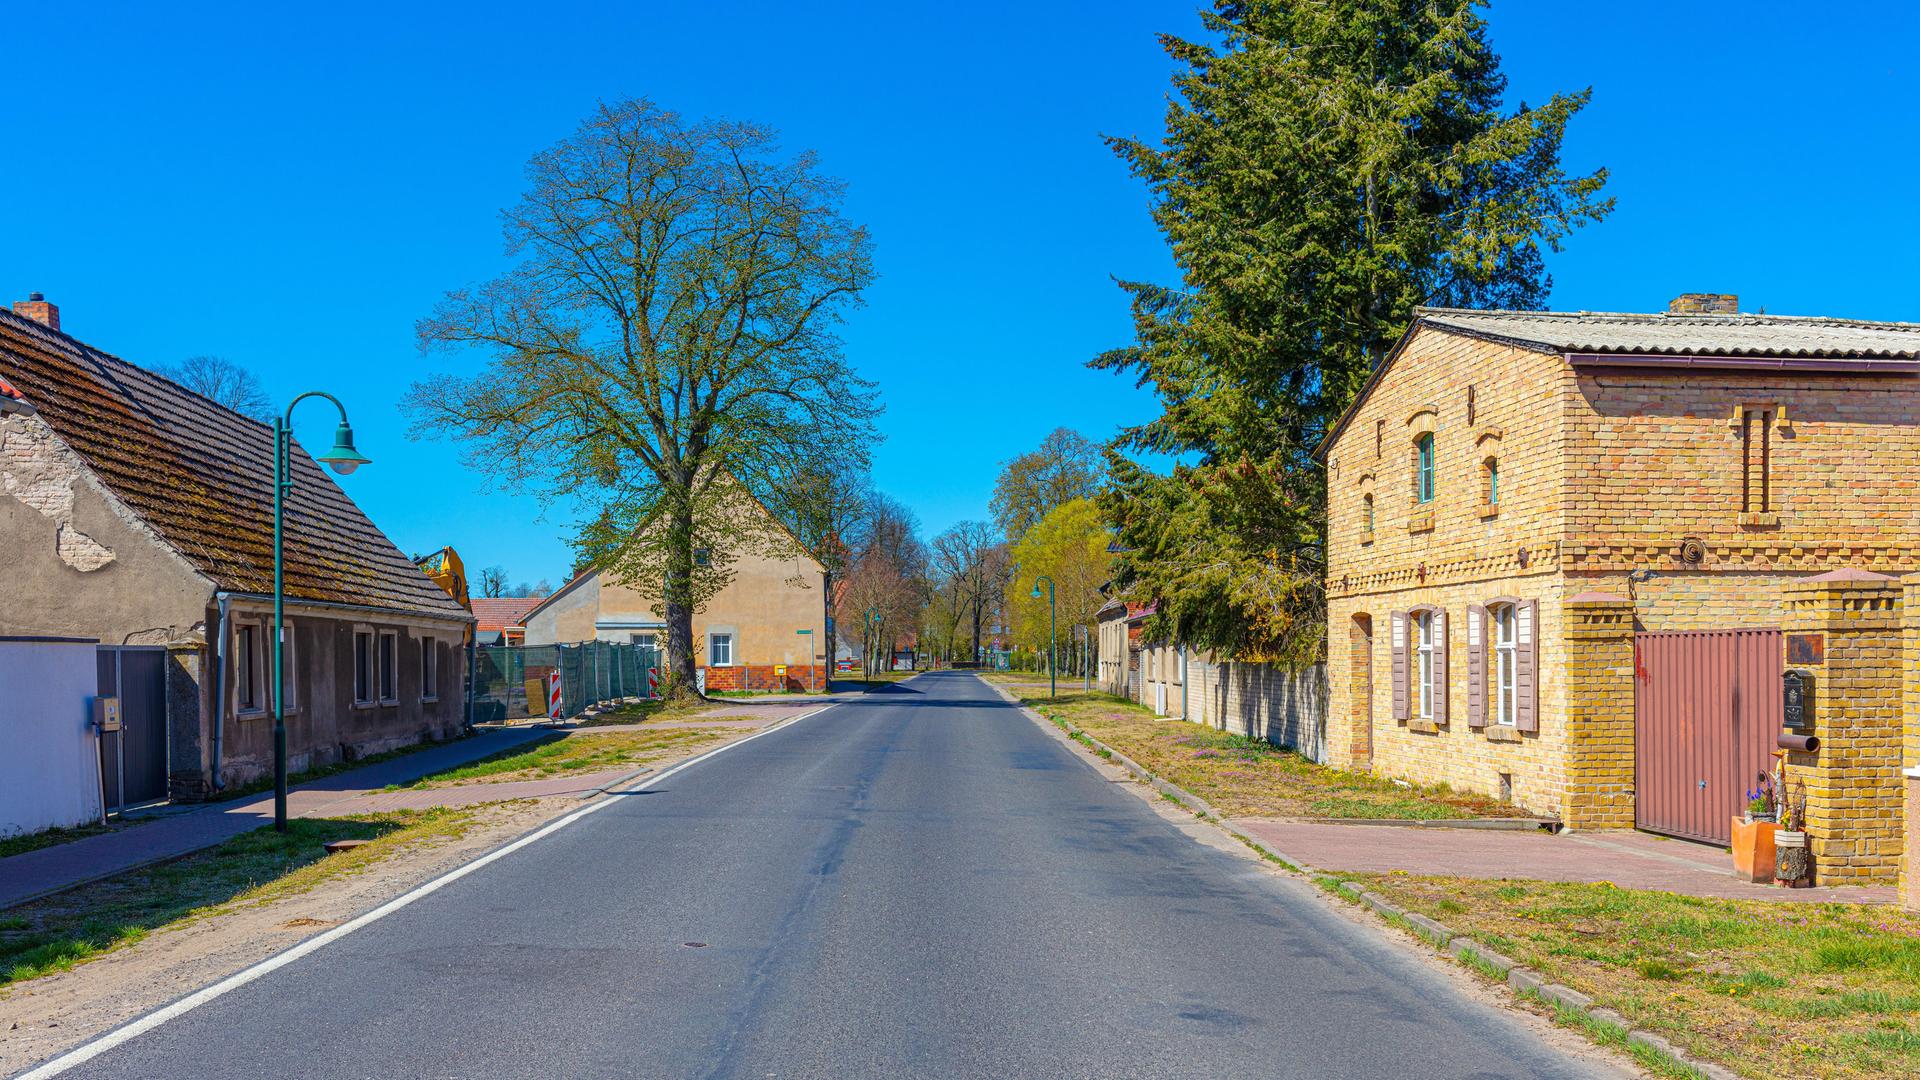 Eine Landstraße, die durch ein Dorf führt. Rechts und links sind alte Häuser zu sehen - Beispiele für historische Dorfarchitektur mit denkmalgeschützte Fassaden.